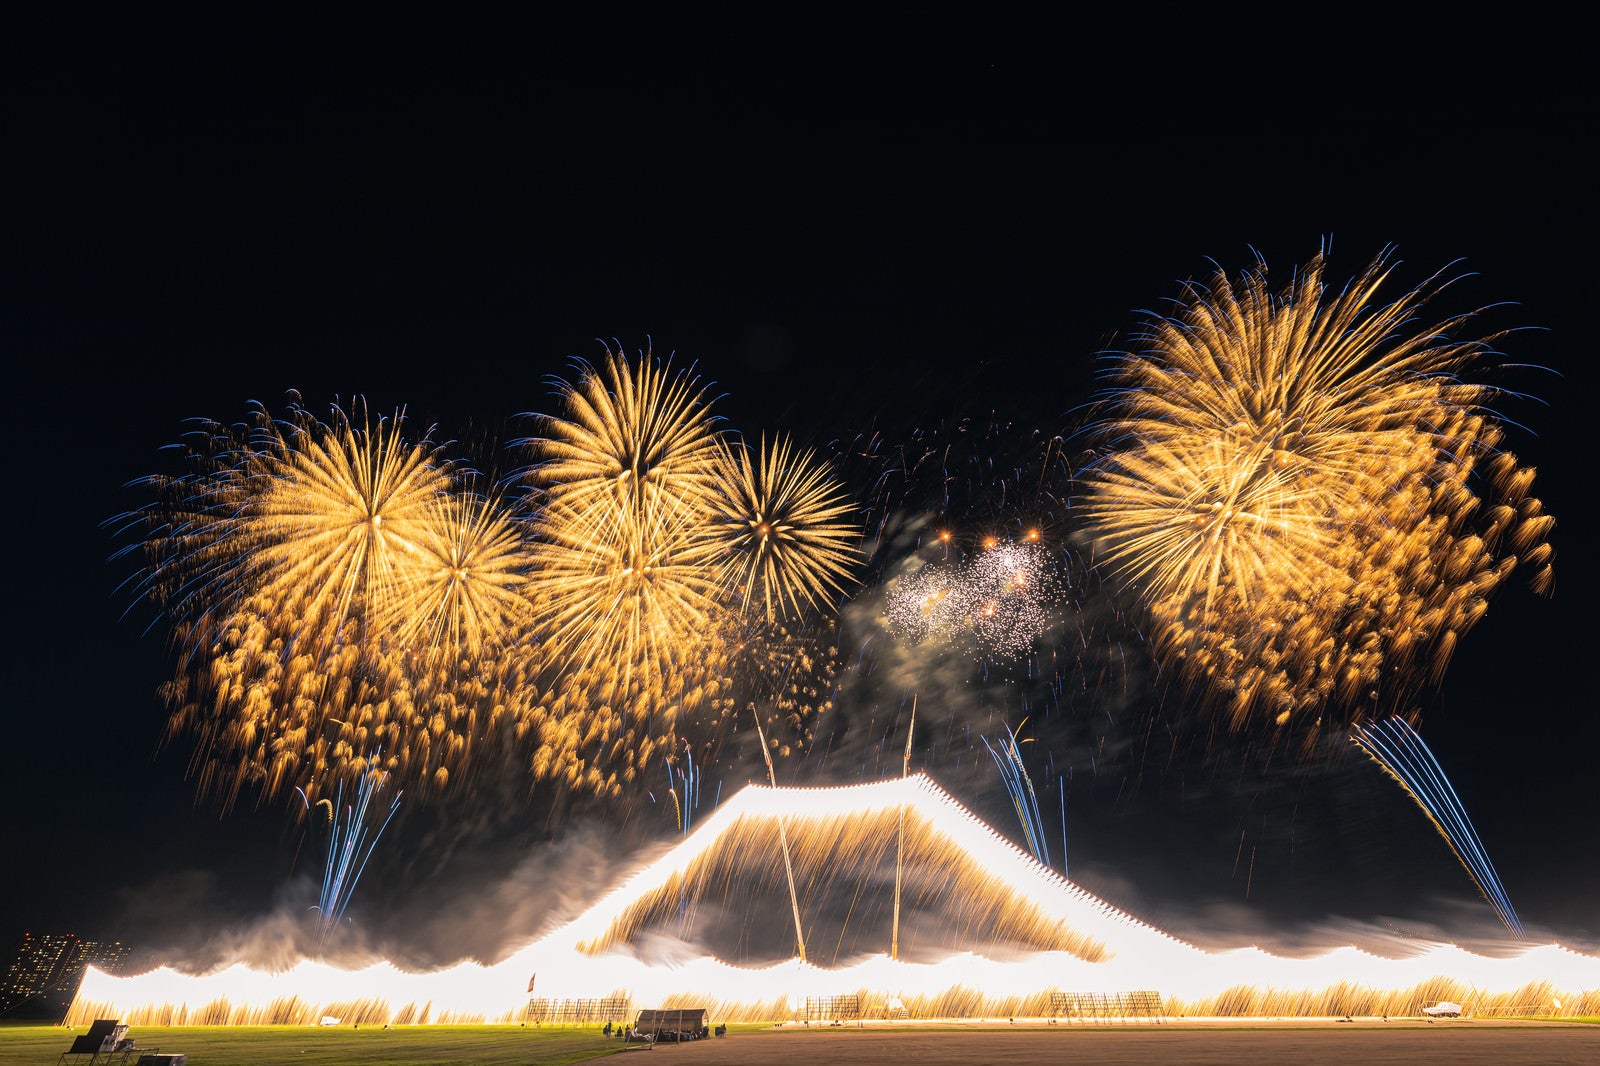 「クレーンで高さ50メートルまで釣り上げた江戸川区花火大会の仕掛け花火」の写真